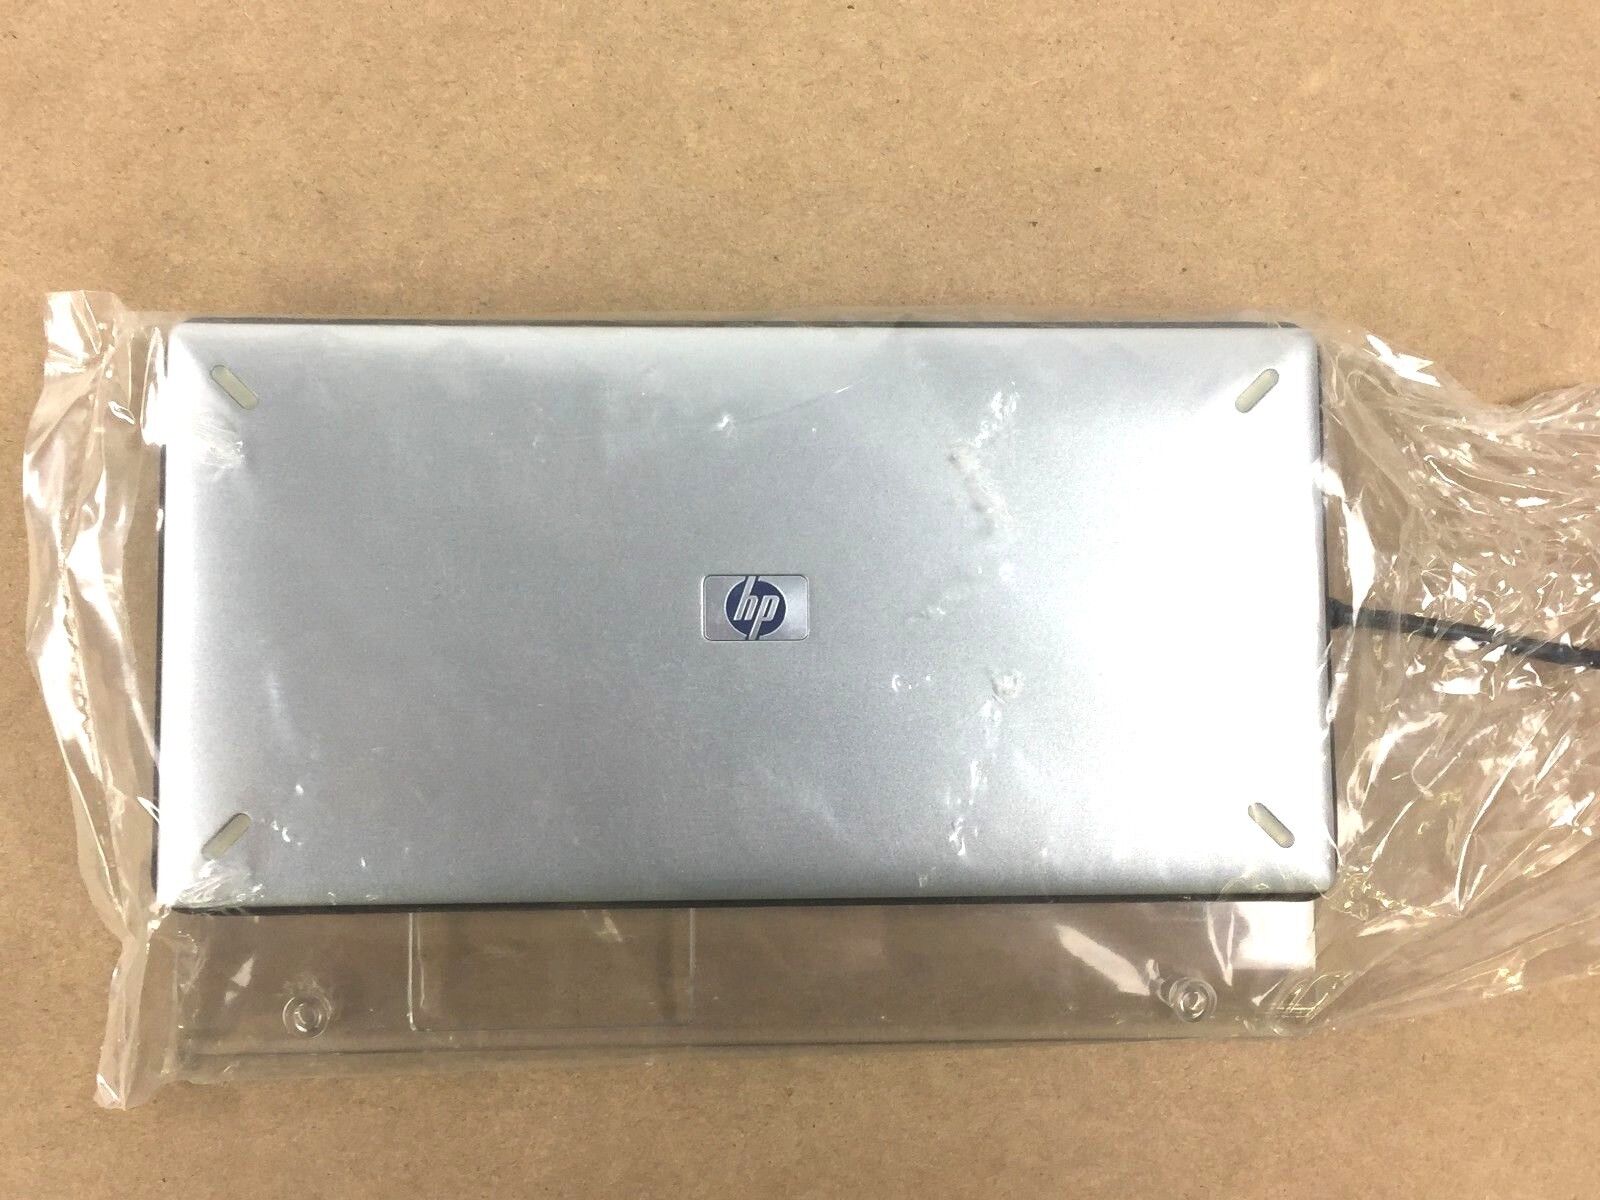 HP Scanjet 4600 Transparent Materials Adapter- Q3121A